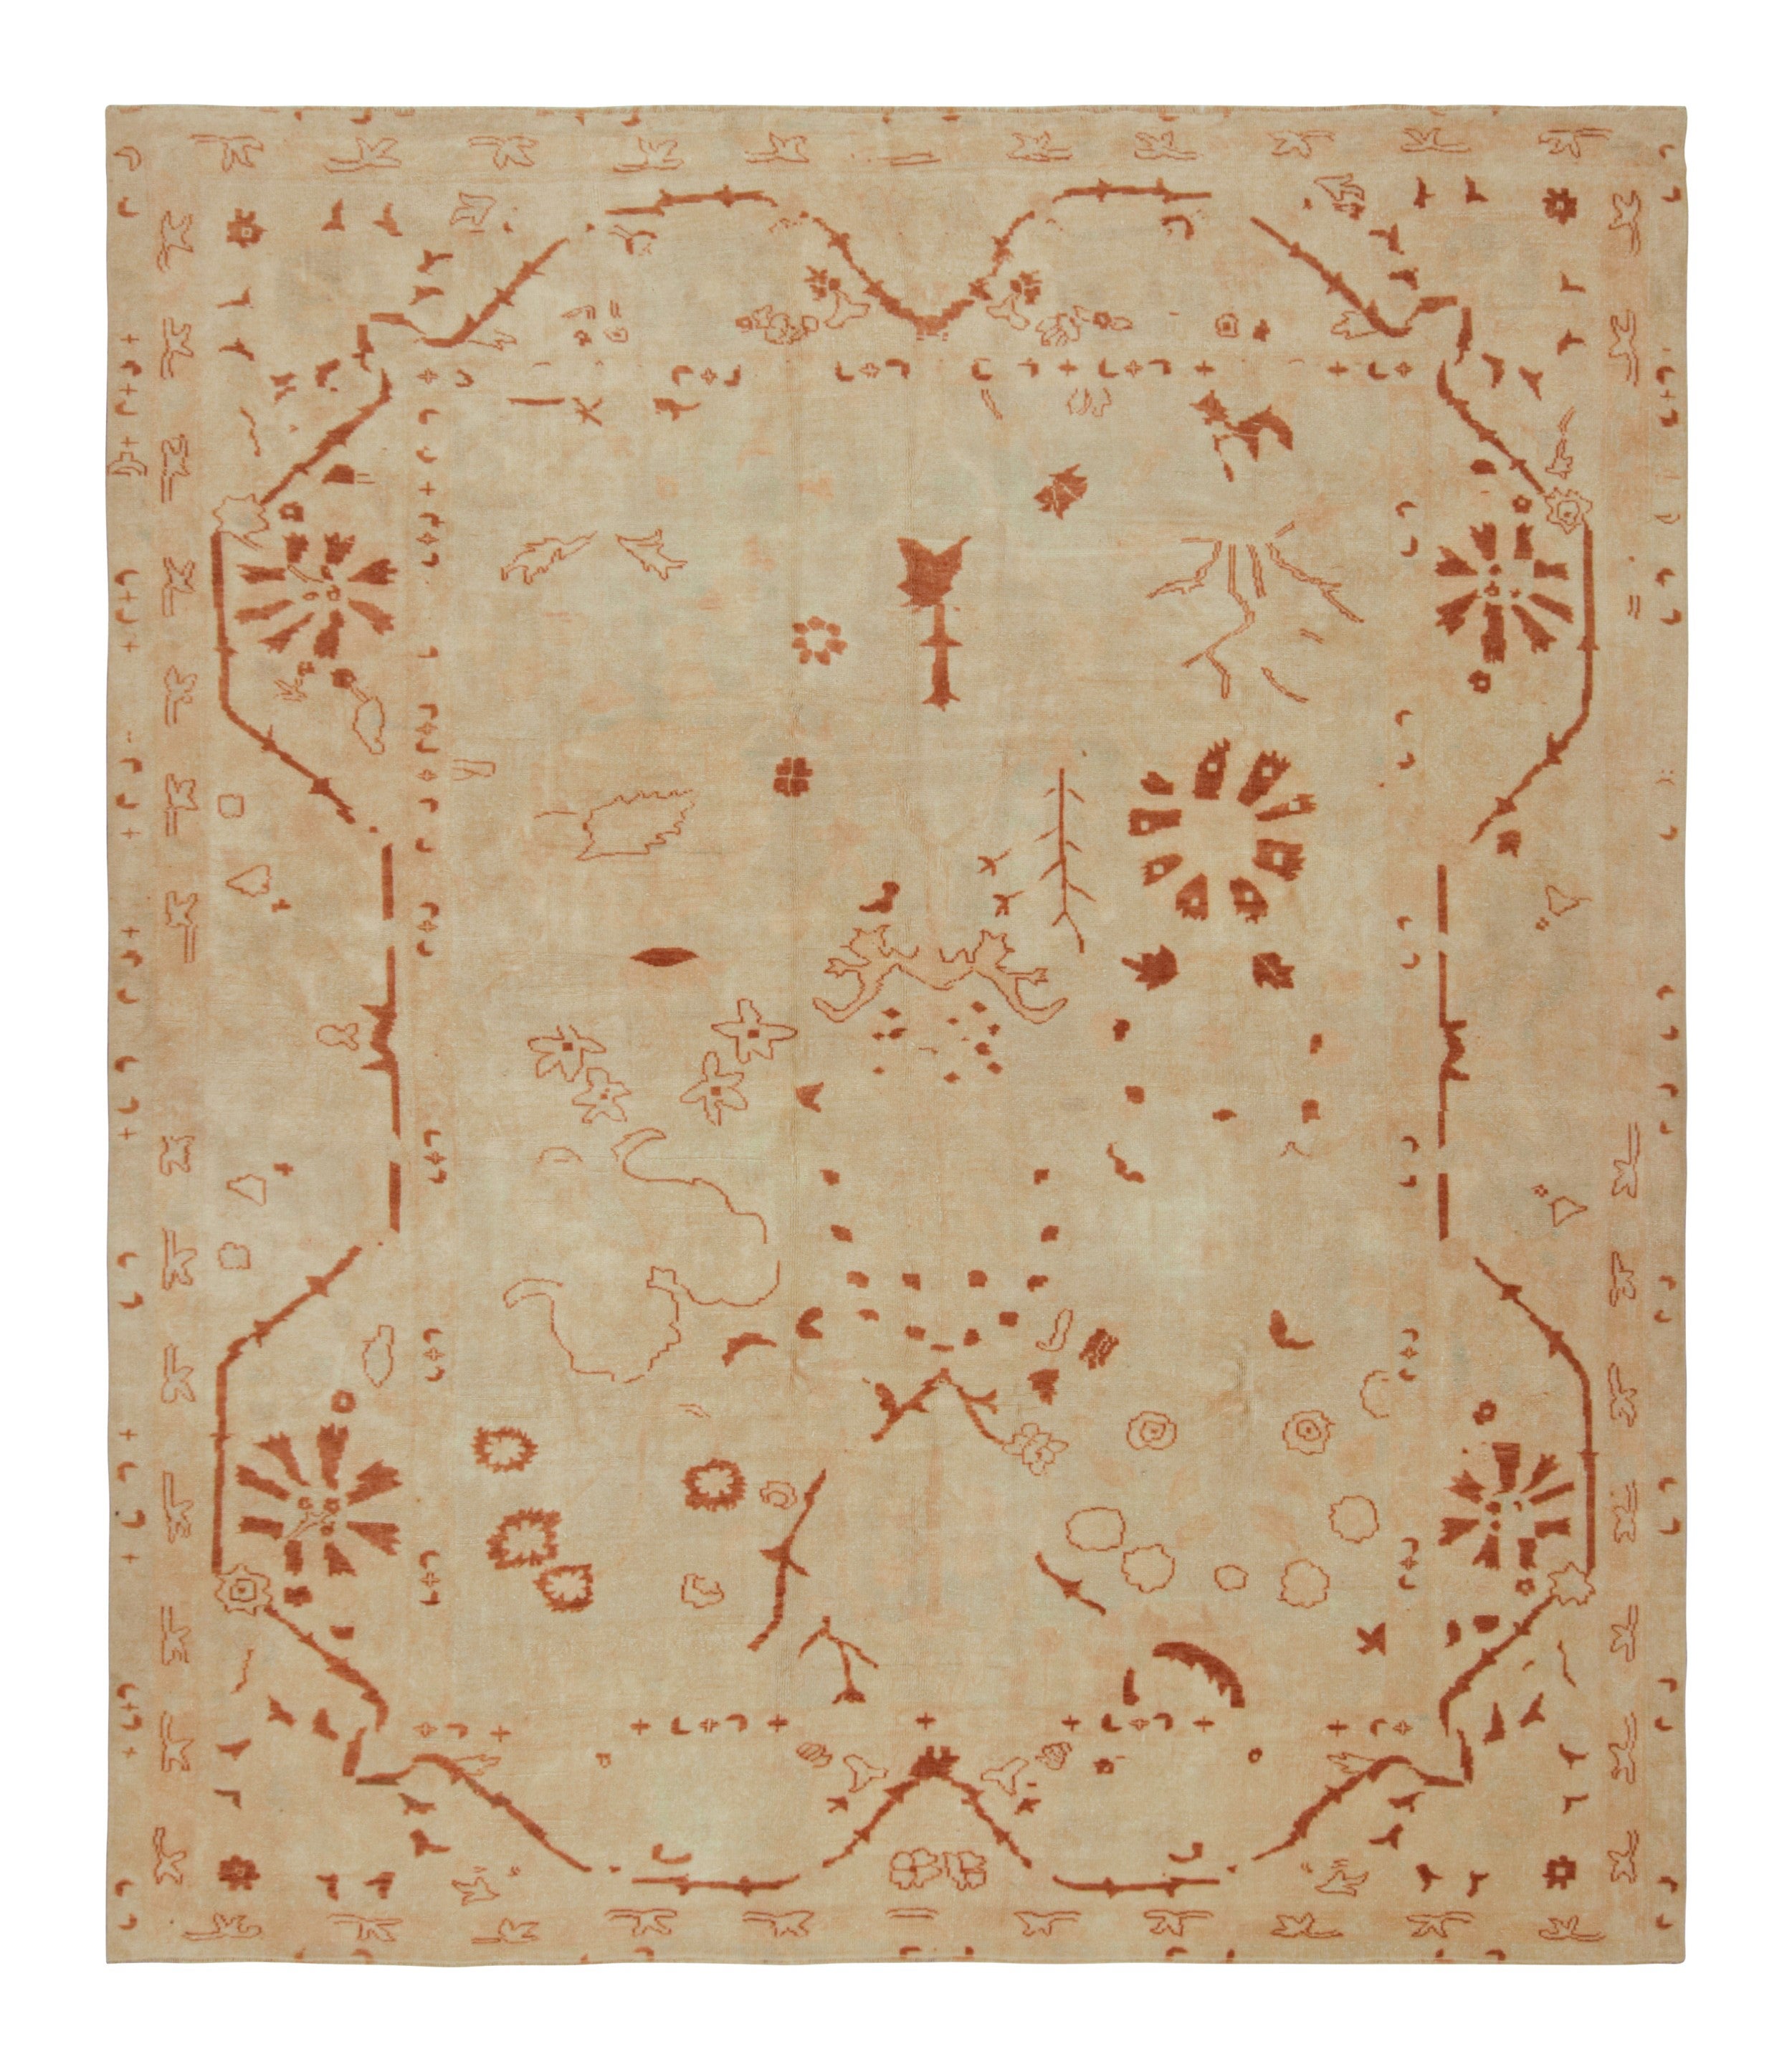 Seltener Vintage Oushak-Teppich in Beige mit Blumenmuster, von Rug & Kilim, aus Teppich